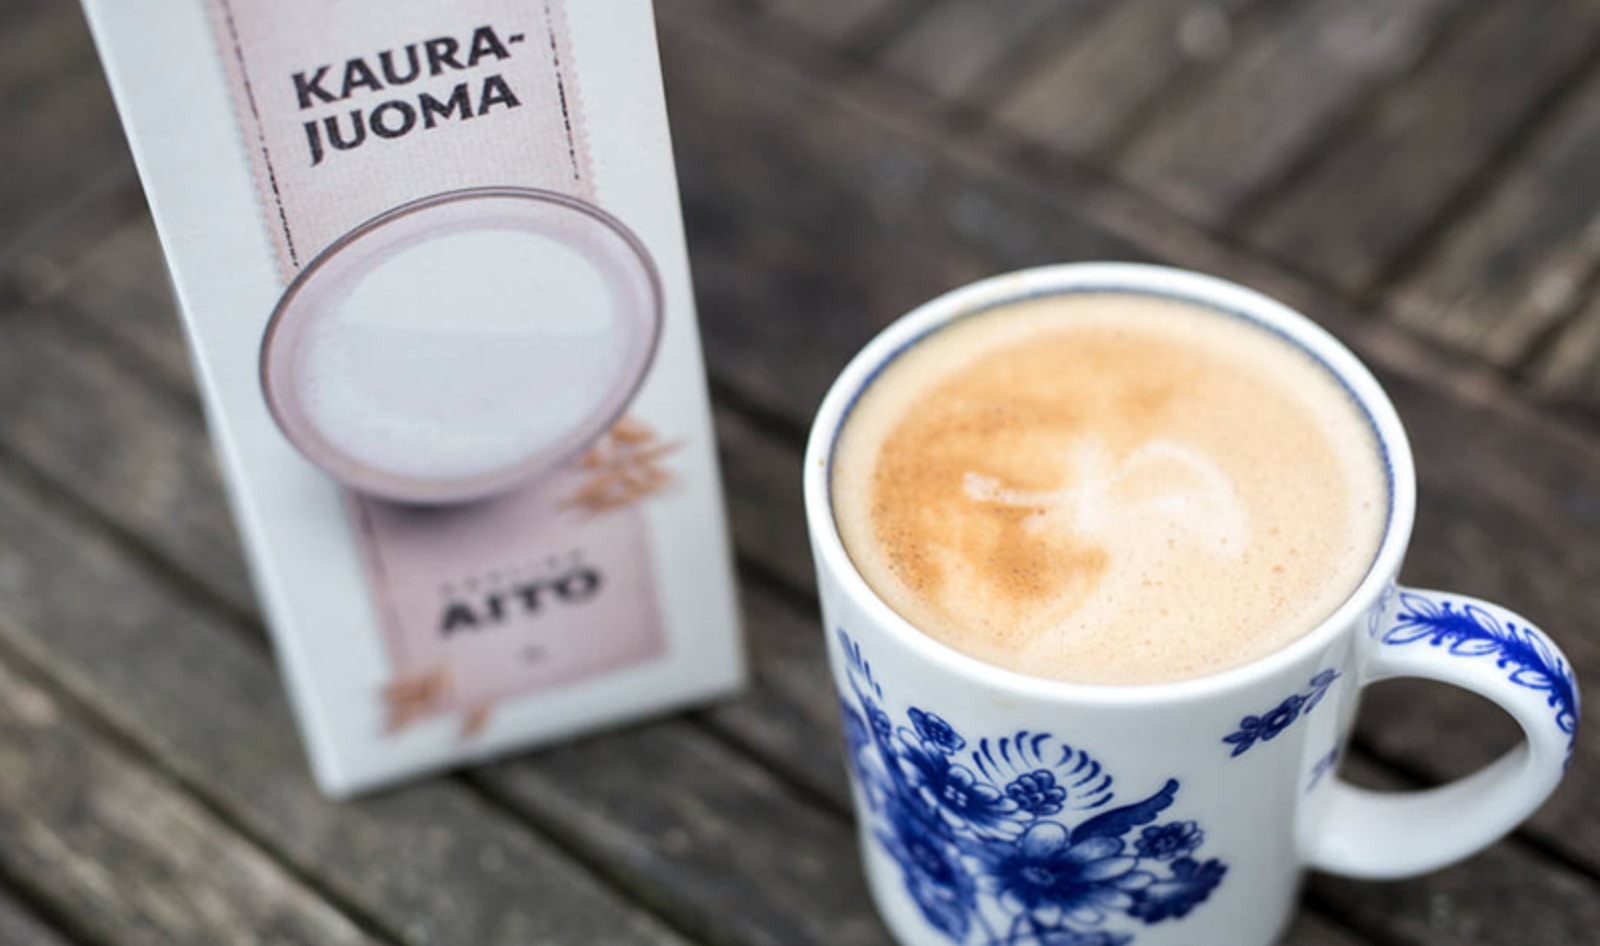 Finnish Dairy Brand Debuts Vegan Milk and Yogurt Line